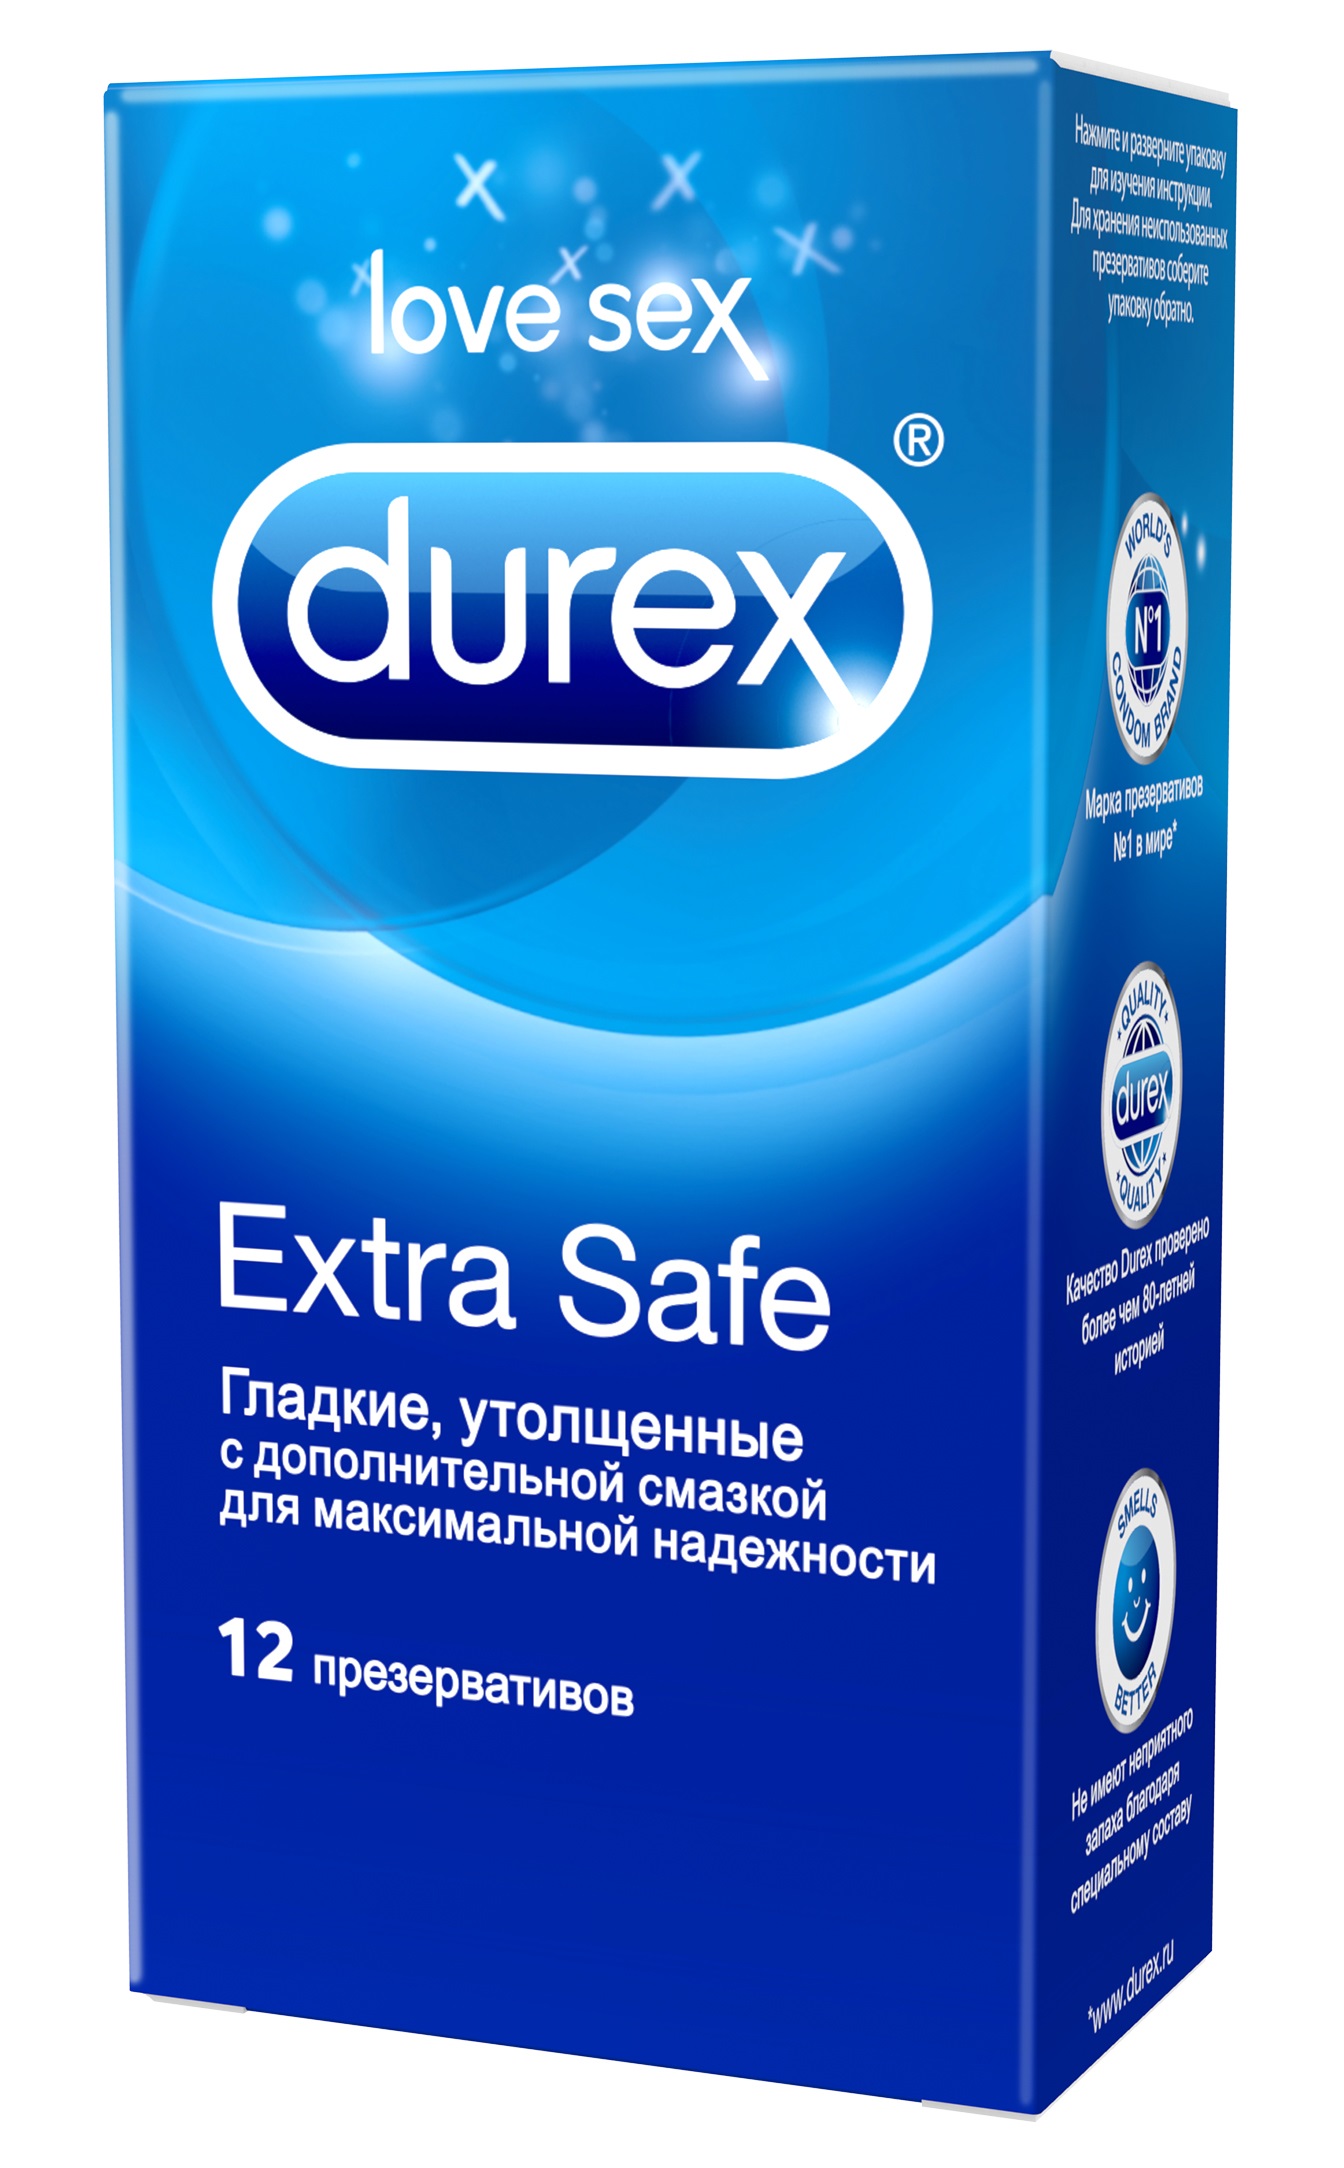 Durex Extra Safe Утолщенные презервативы с дополнительной смазкой для максимальной надежности, 12 шт